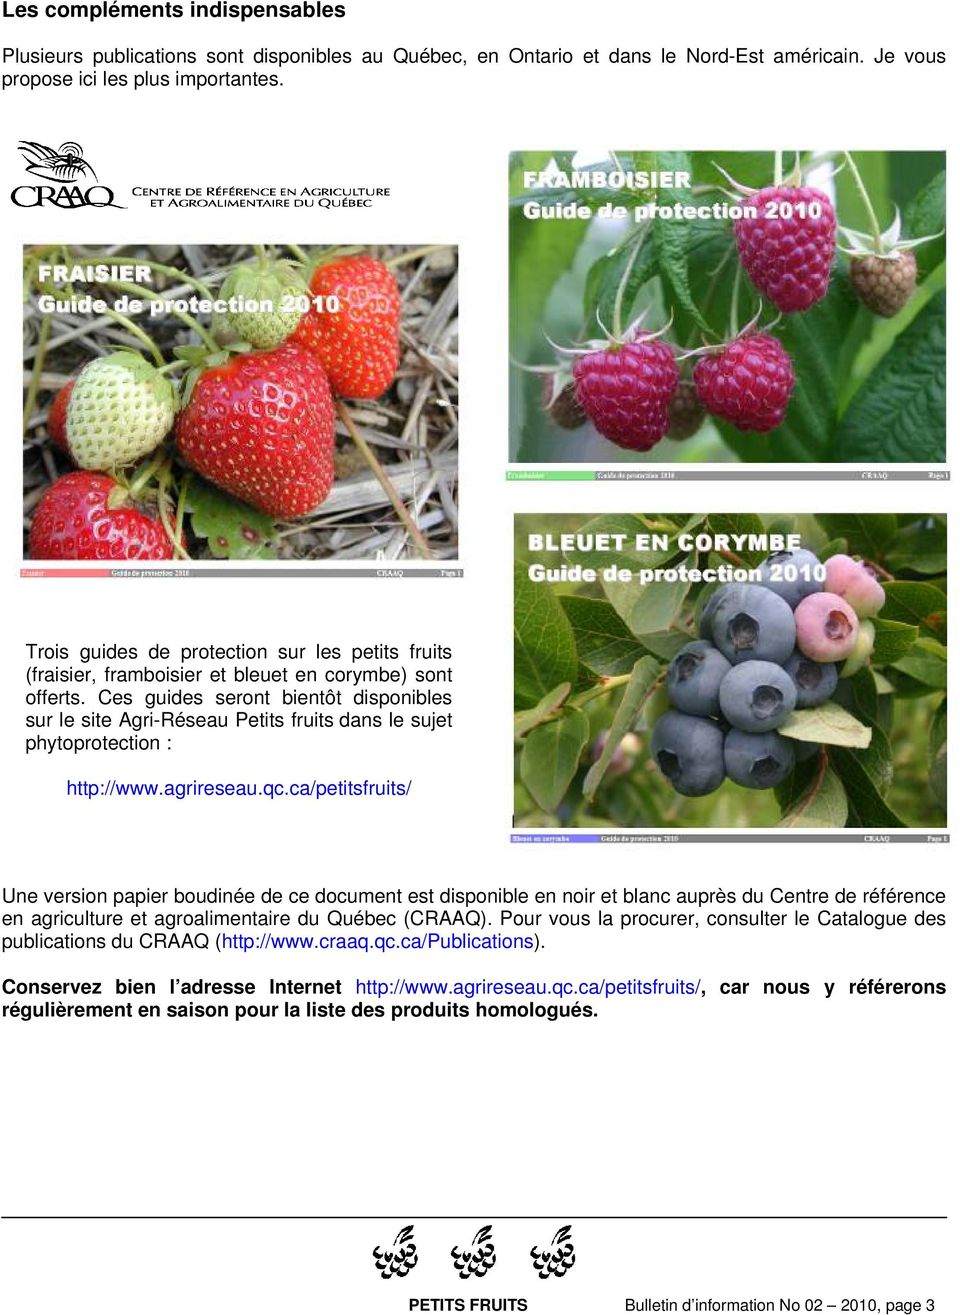 Ces guides seront bientôt disponibles sur le site Agri-Réseau Petits fruits dans le sujet phytoprotection : HThttp://www.agrireseau.qc.